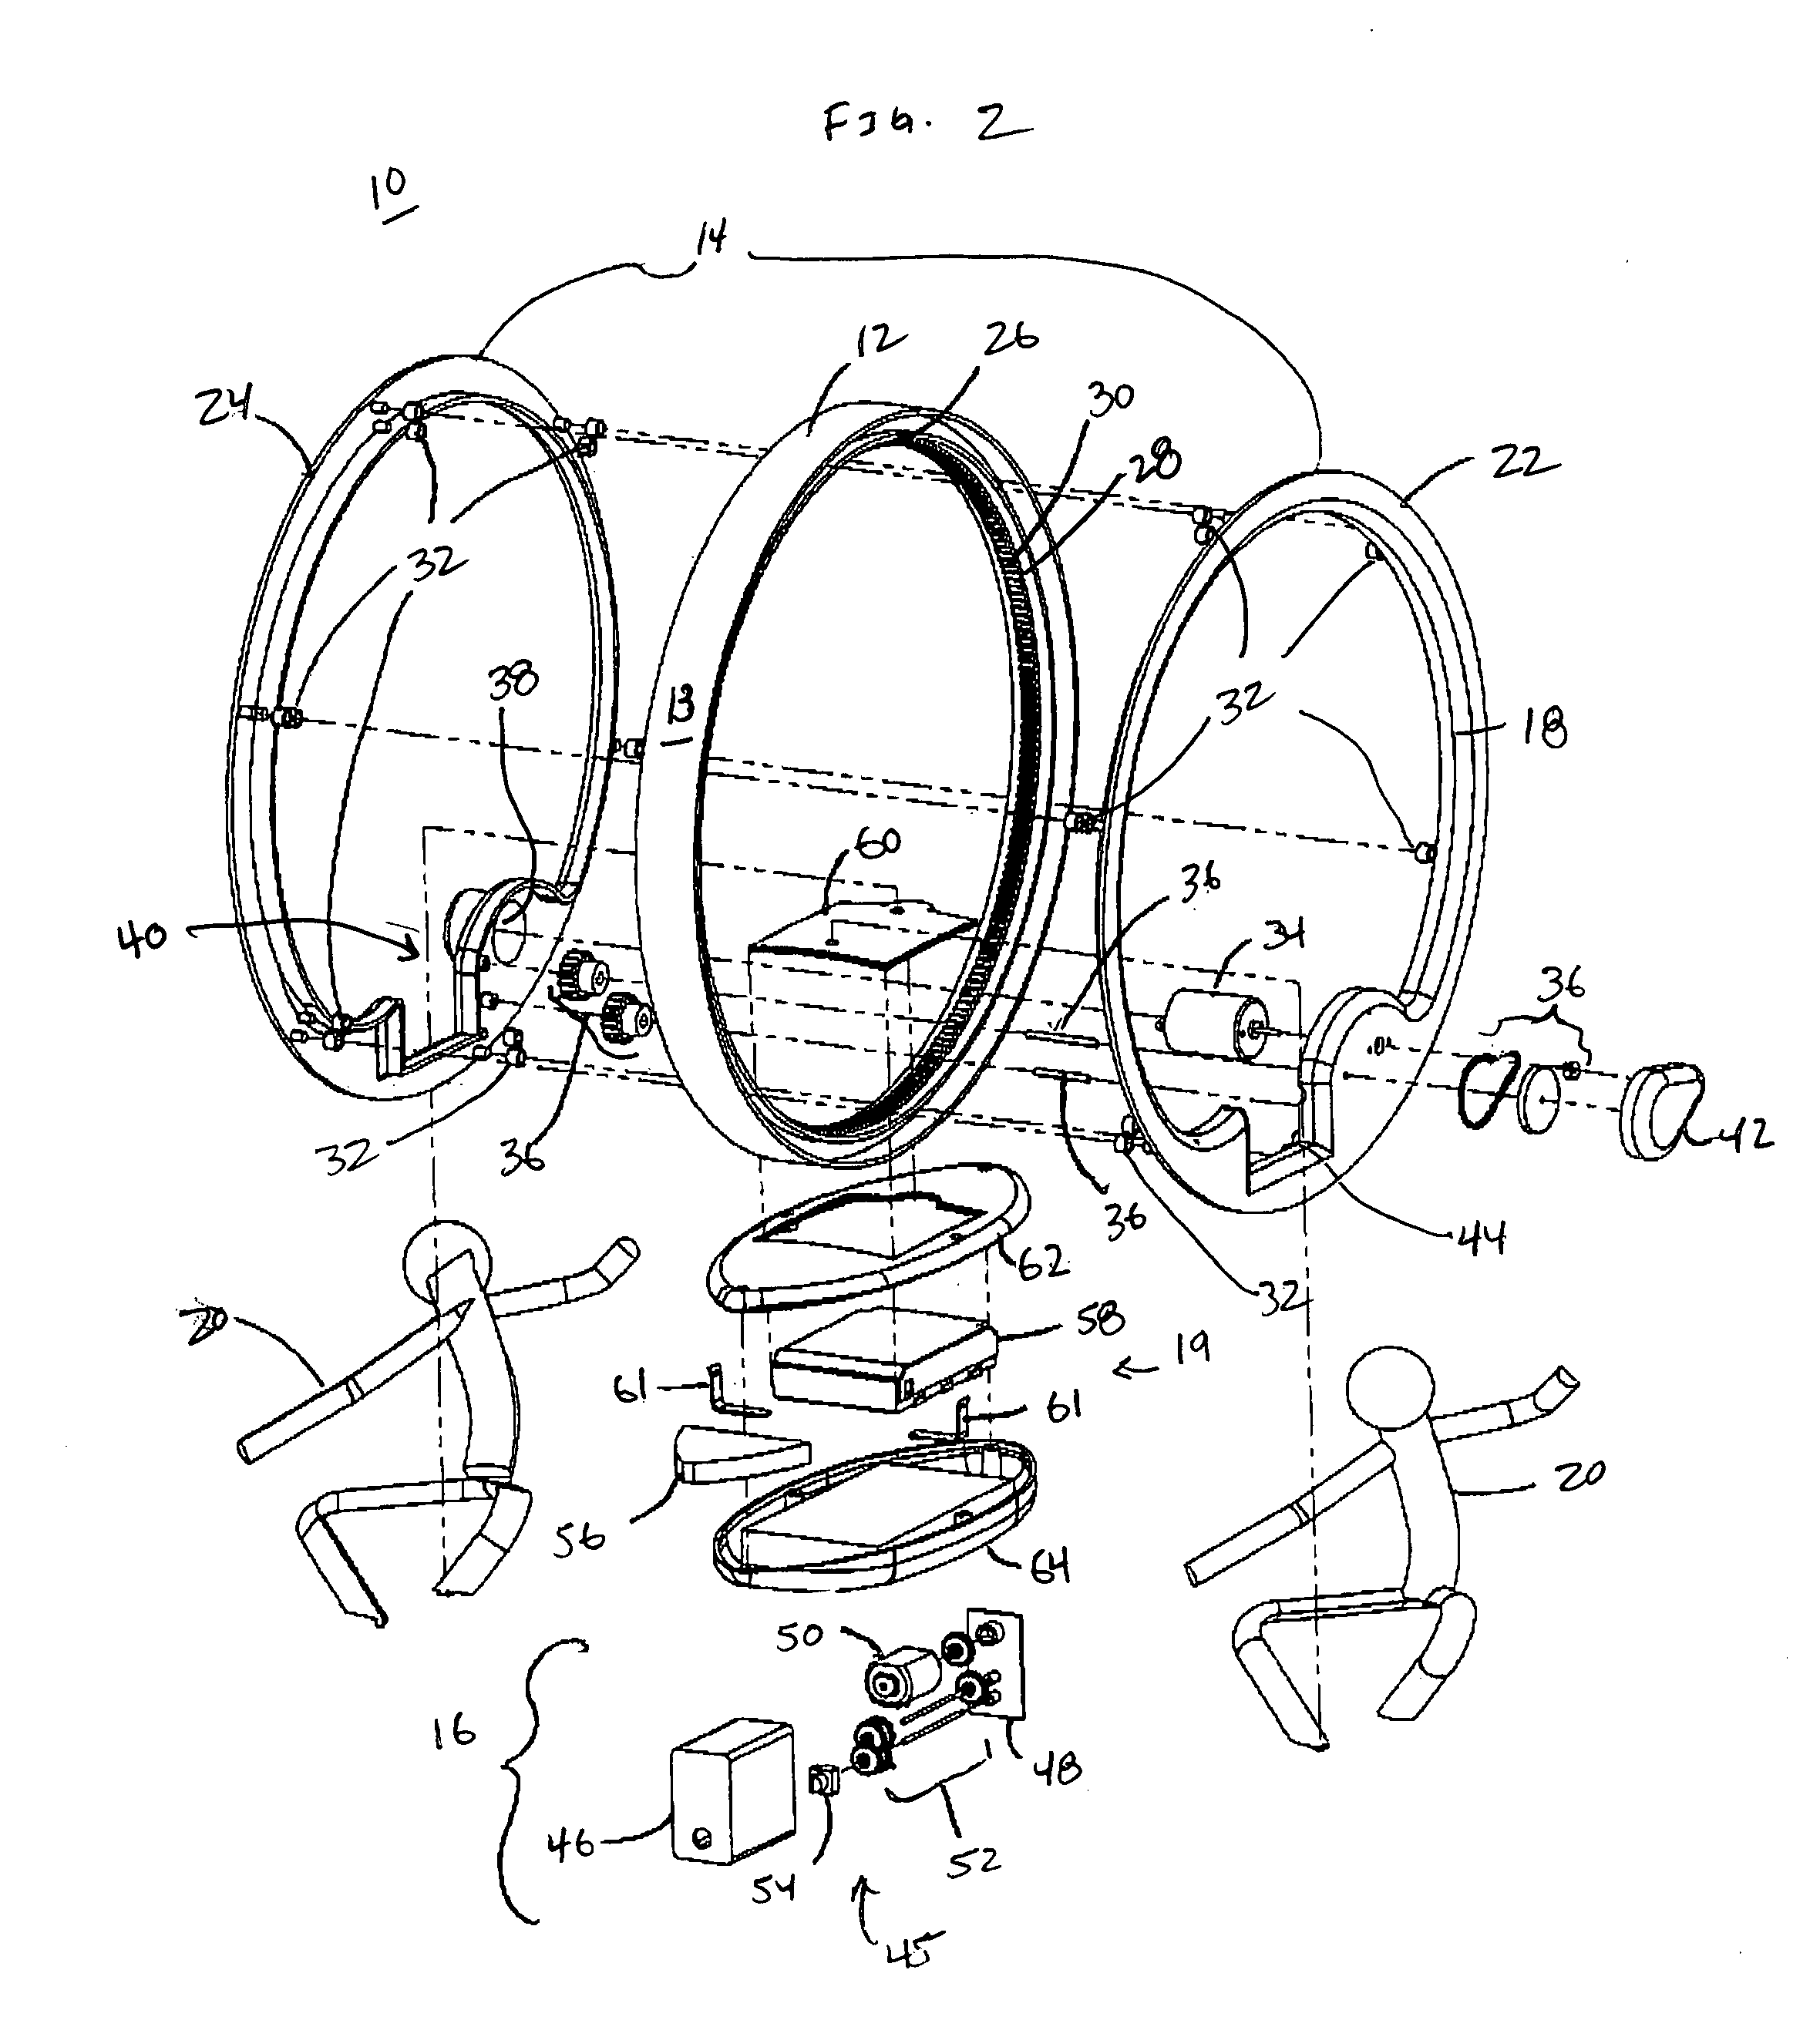 Mono-wheel vehicle with tilt mechanism